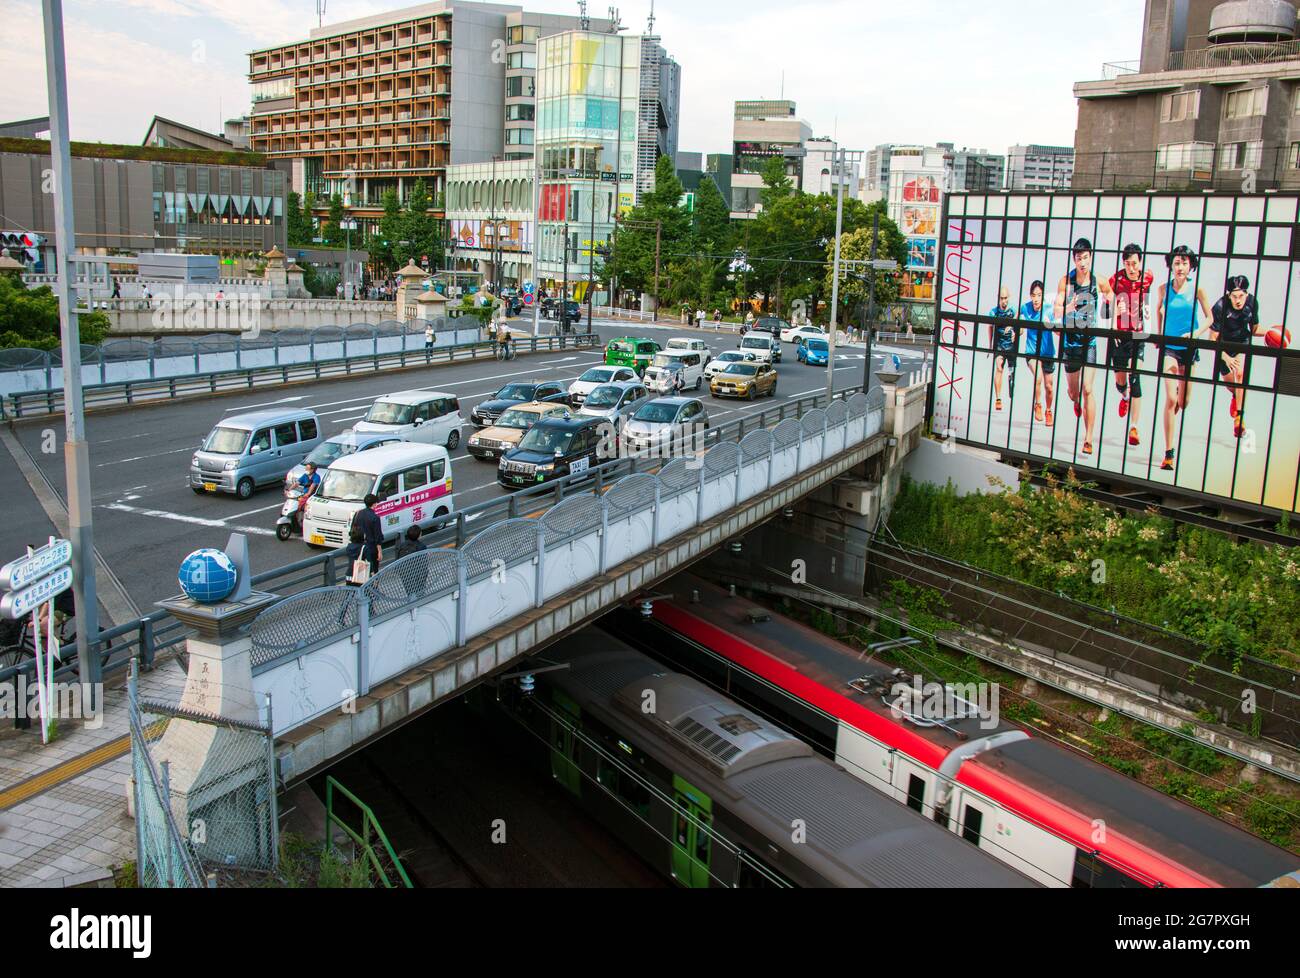 Les piétons passent par le pont olympique près du parc Yoyogi, Tokyo, le 21 juin 2021. Alors que le pont faisait partie d'un nouveau réseau routier construit avant les Jeux Olympiques de 1964, les globes au sommet des piliers et des reliefs de pierre sur le thème des Jeux Olympiques ont été ajoutés plus de 25 ans plus tard. Le pont est situé près du centre culturel de la jeunesse du Japon, Harajuku, qui a gagné une popularité croissante comme centre culturel alternatif après les Jeux de 1964. Robert Gilhooly photo Banque D'Images